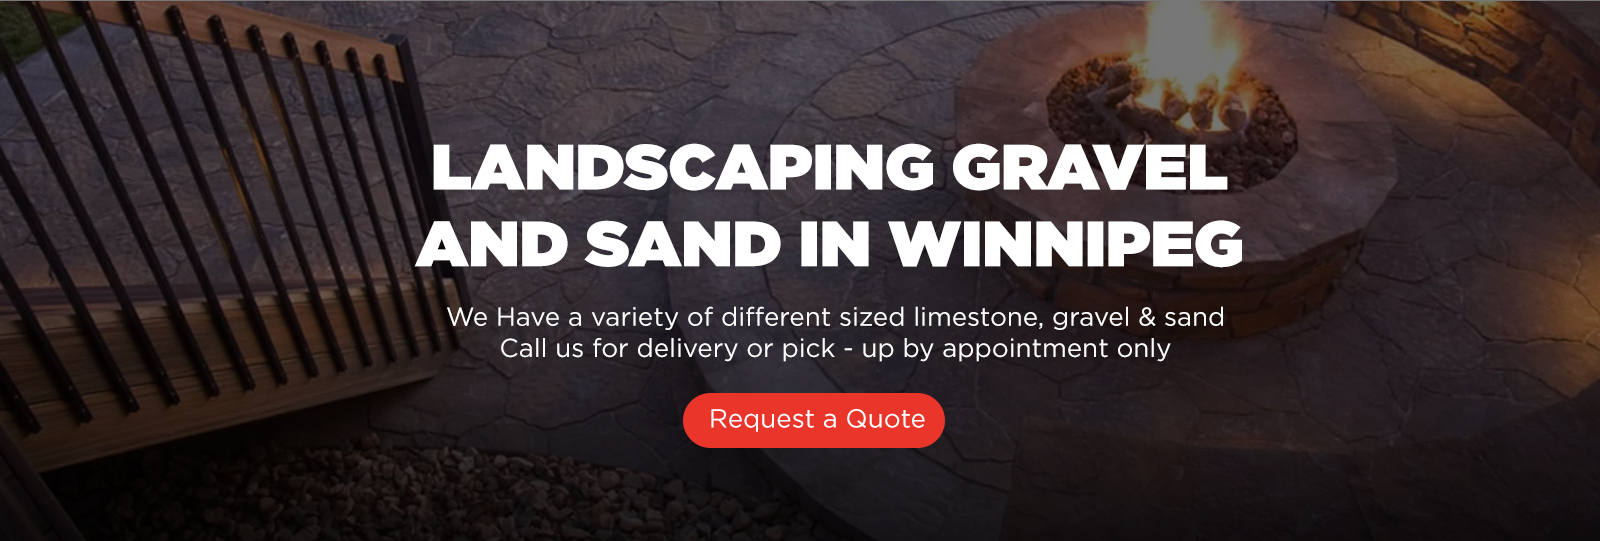 Landscaping gravel & sand winnipeg